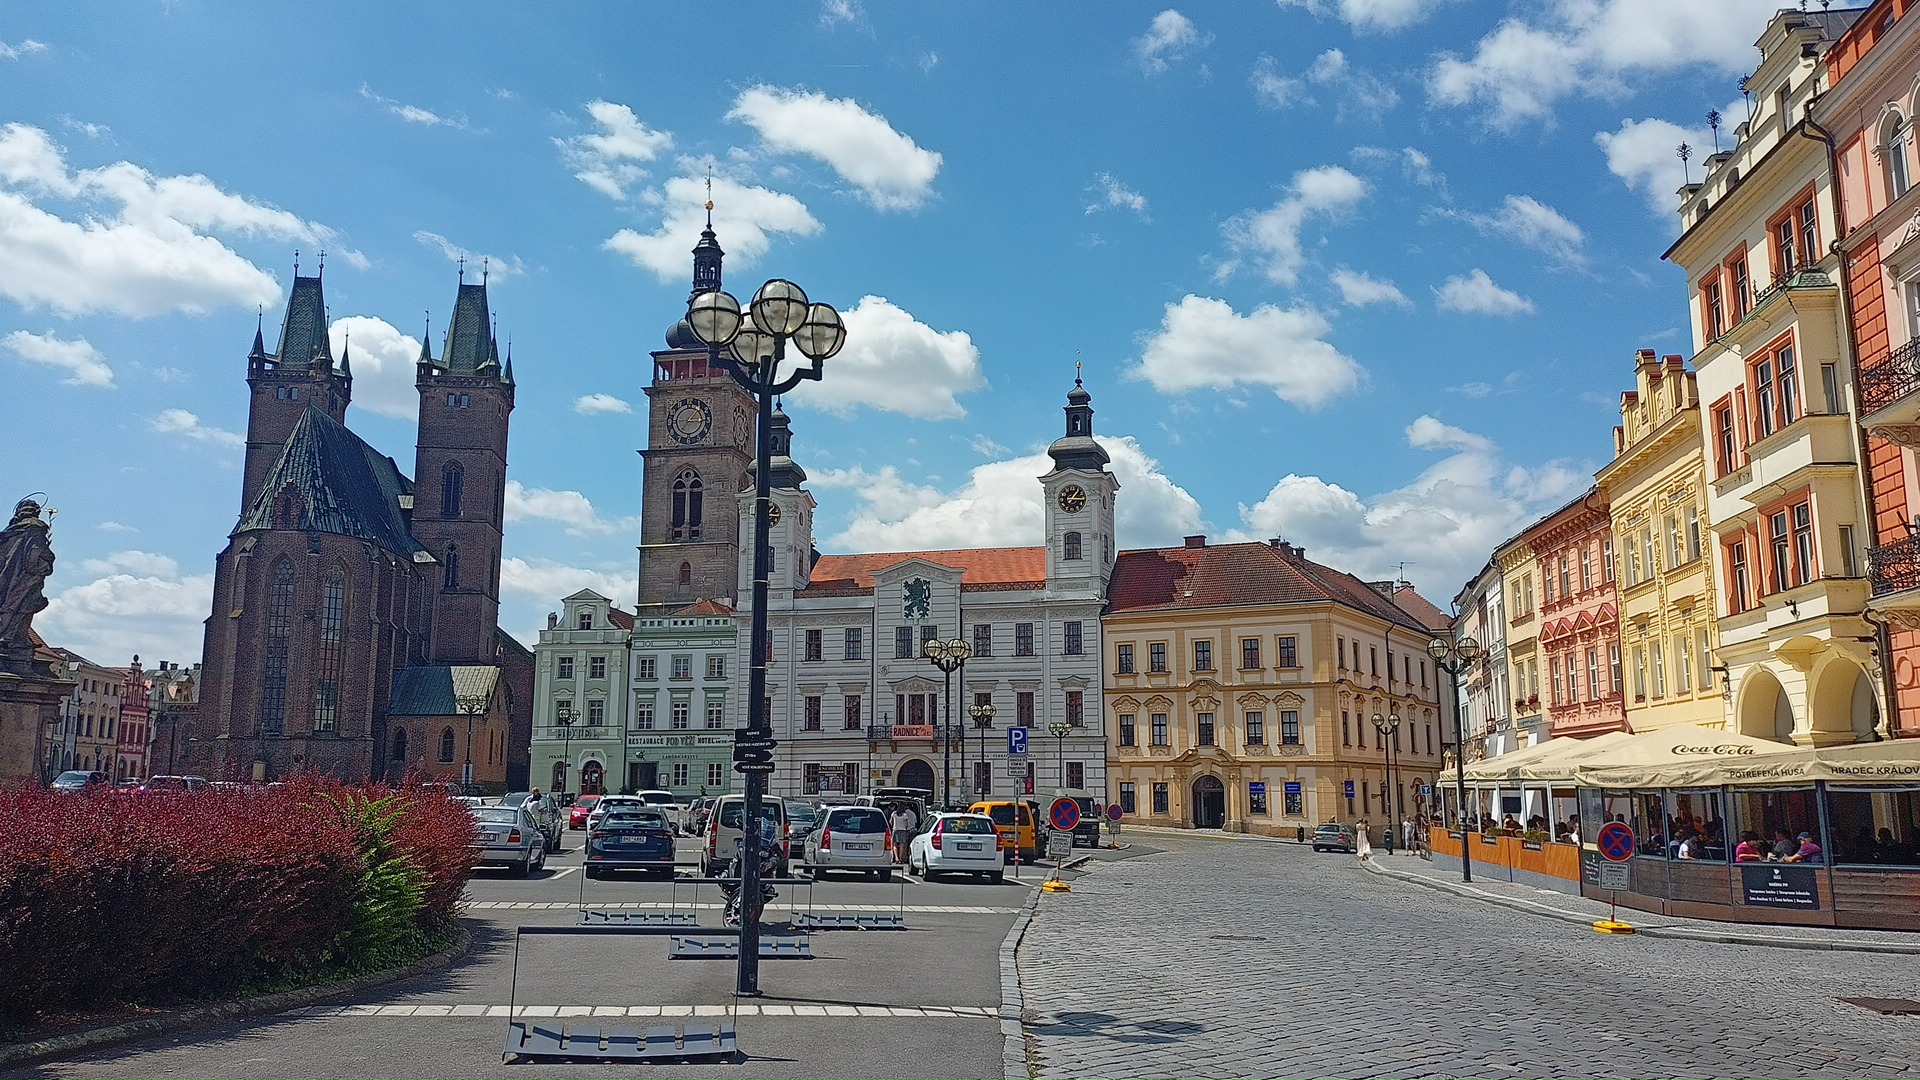 Náměstí Hradec Králové – v Hradci jsem se moc nezdržoval. Jen jsem doplnil zásoby vody a kalorií, a pokračoval dál. 